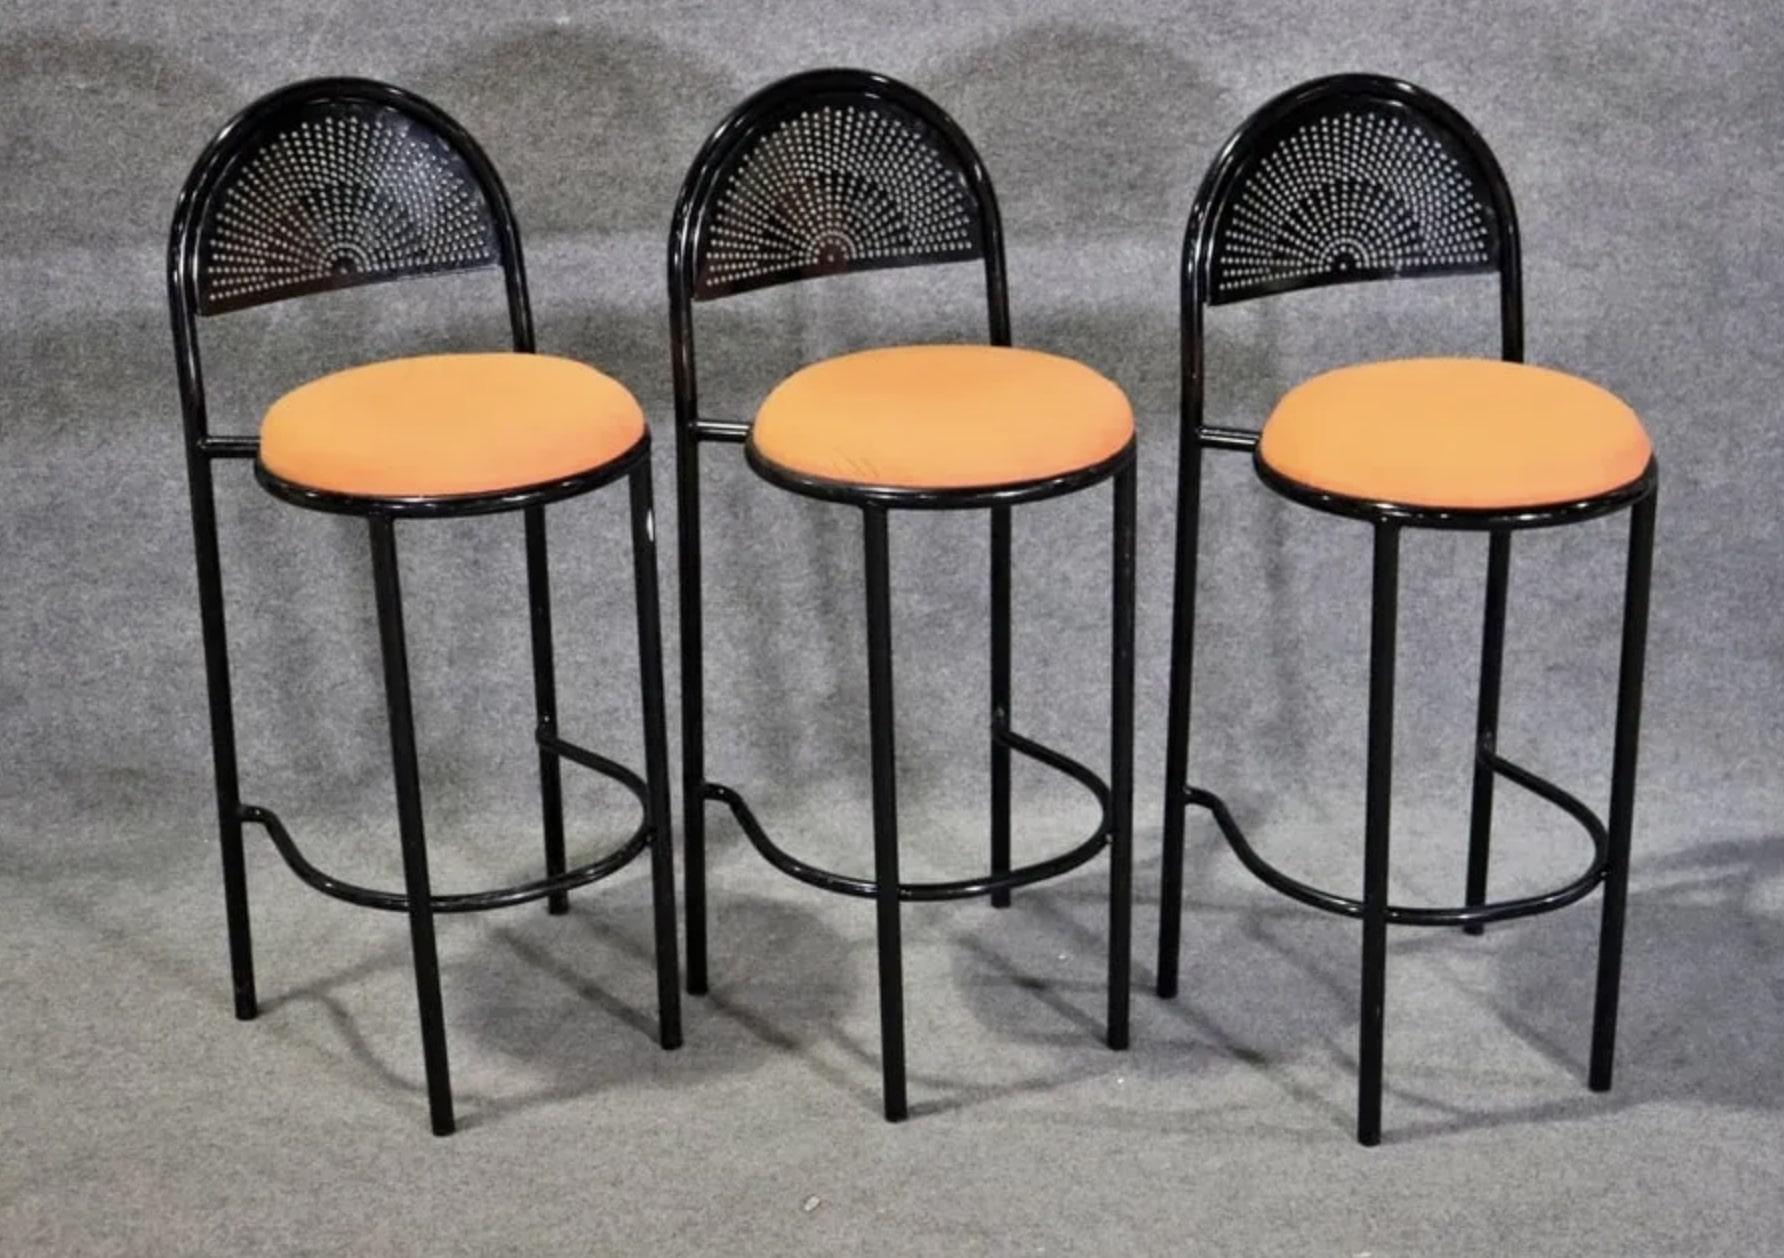 6 Verfügbar
Listing ist für 3 schwarz lackierte Metallhocker mit leuchtend orange Sitze.
Halbrunde, perforierte Rückenlehne.
Bitte bestätigen Sie den Standort NY oder NJ